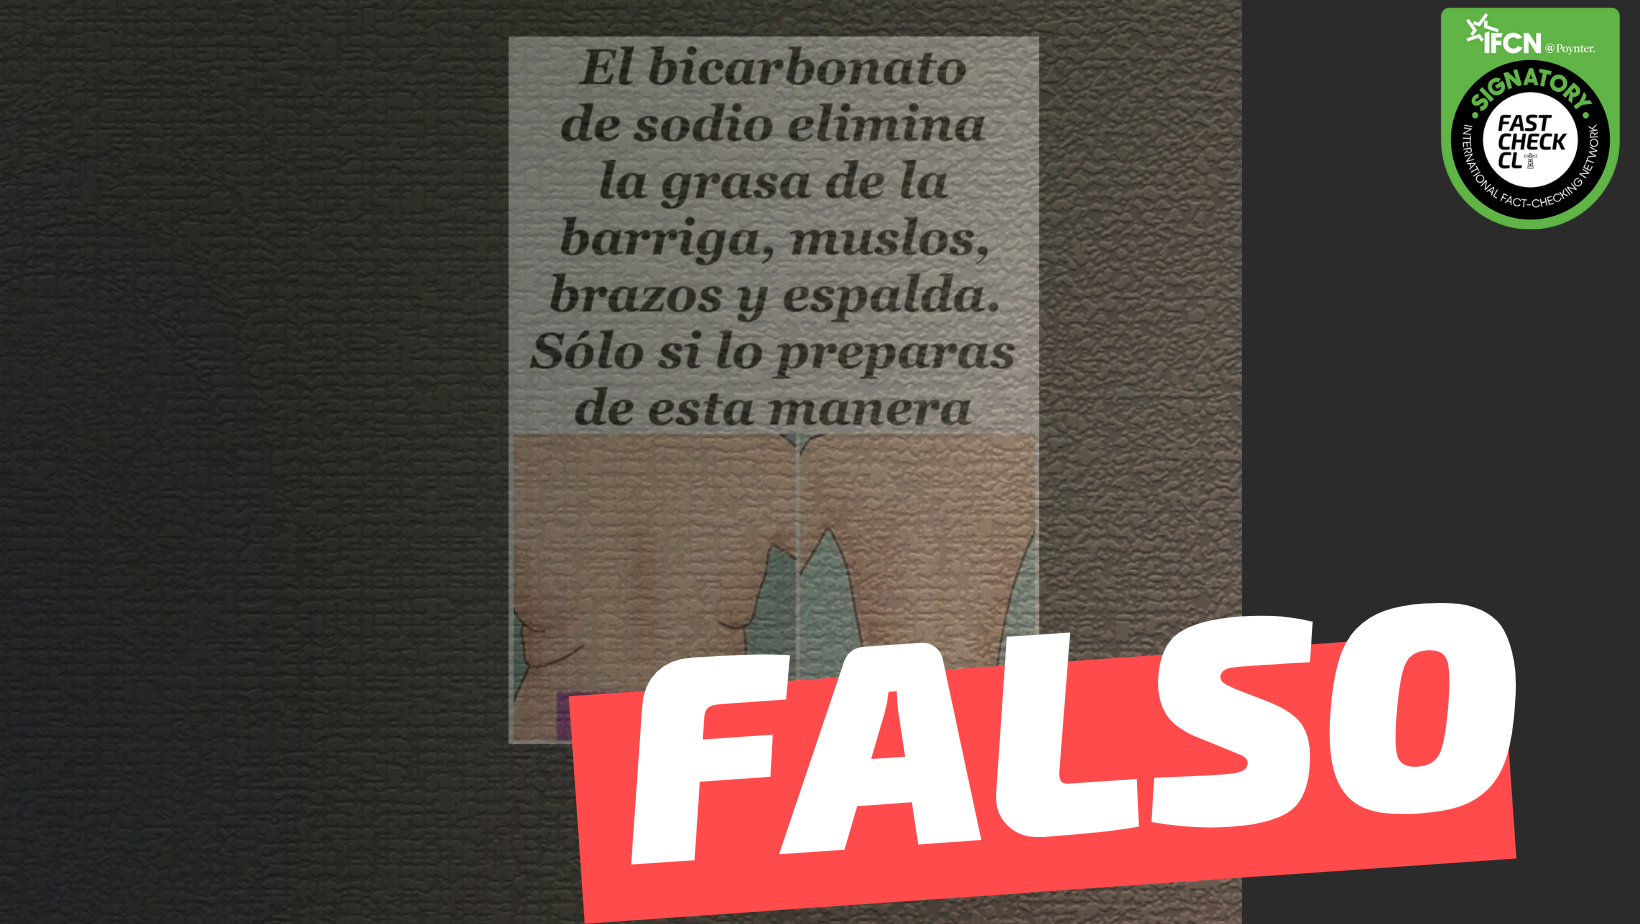 Read more about the article “El bicarbonato de sodio elimina la grasa de la barriga, muslos, brazos y espalda”: #Falso